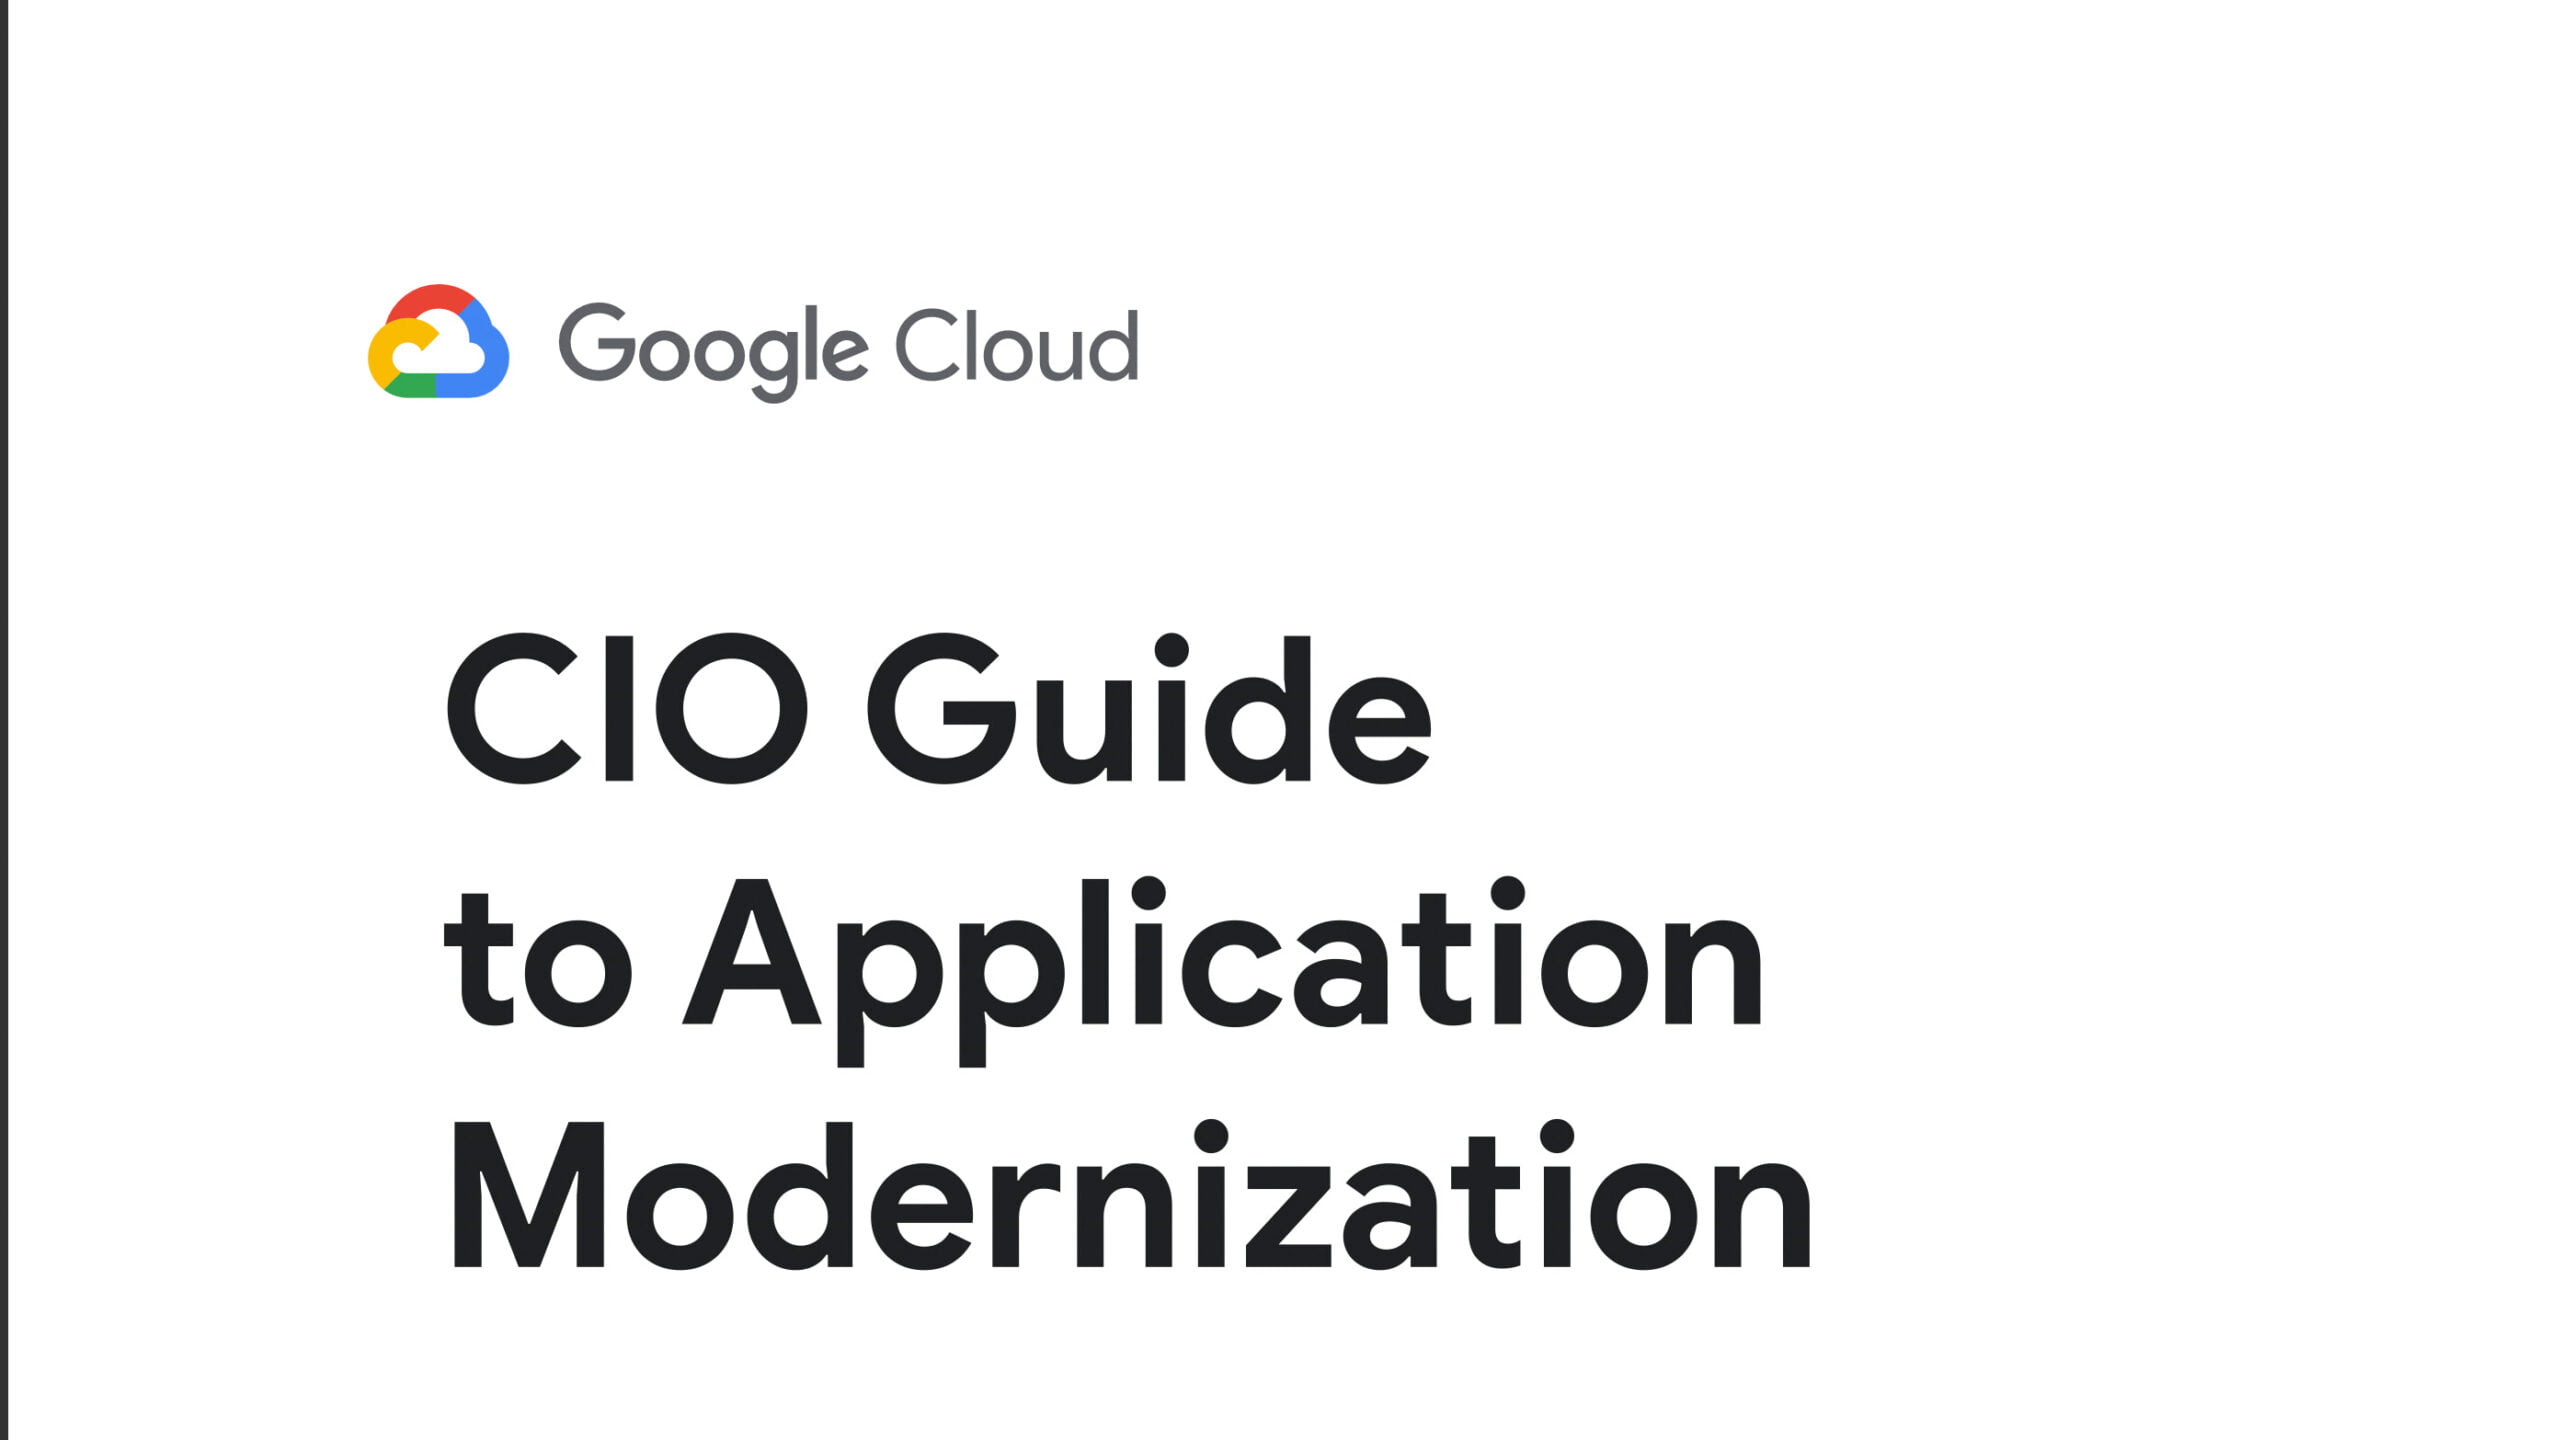 7. CIO Guide to app modernization